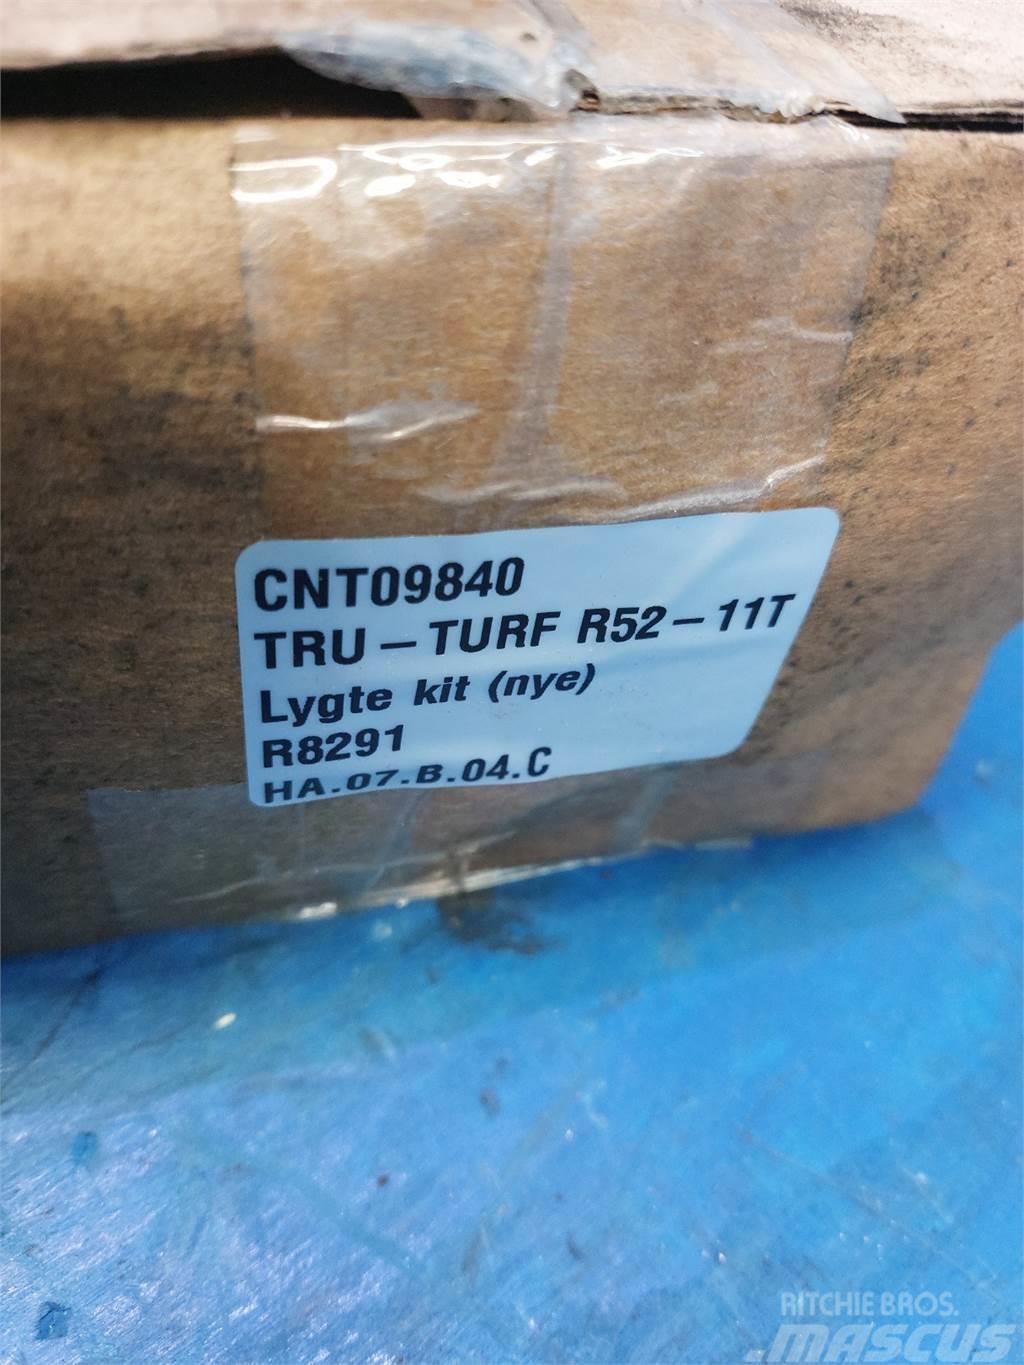  Tru-Turf R52 Altele